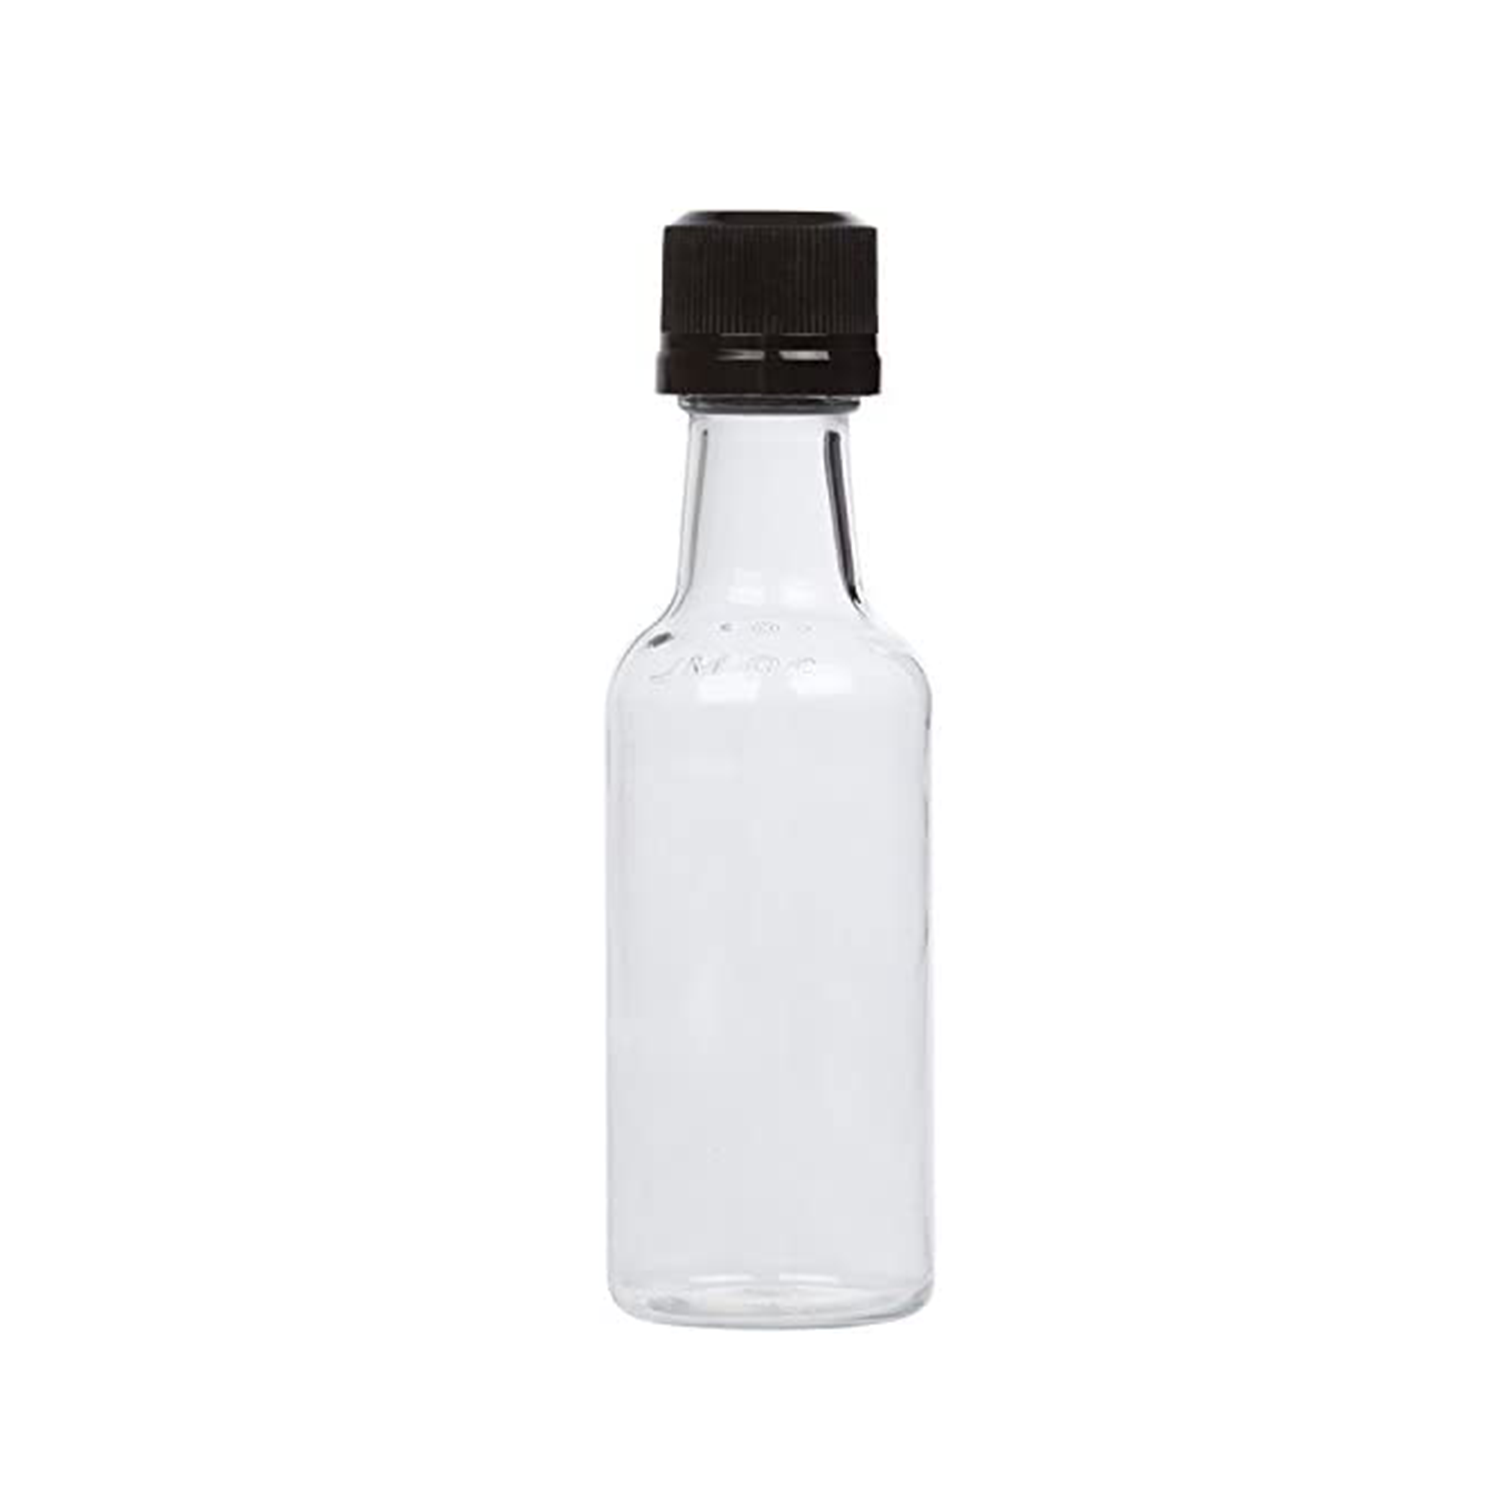 (12) Mini Liquor Bottles 50ml Black Mini Empty Plastic Alcohol Shot Bottles  (Black)